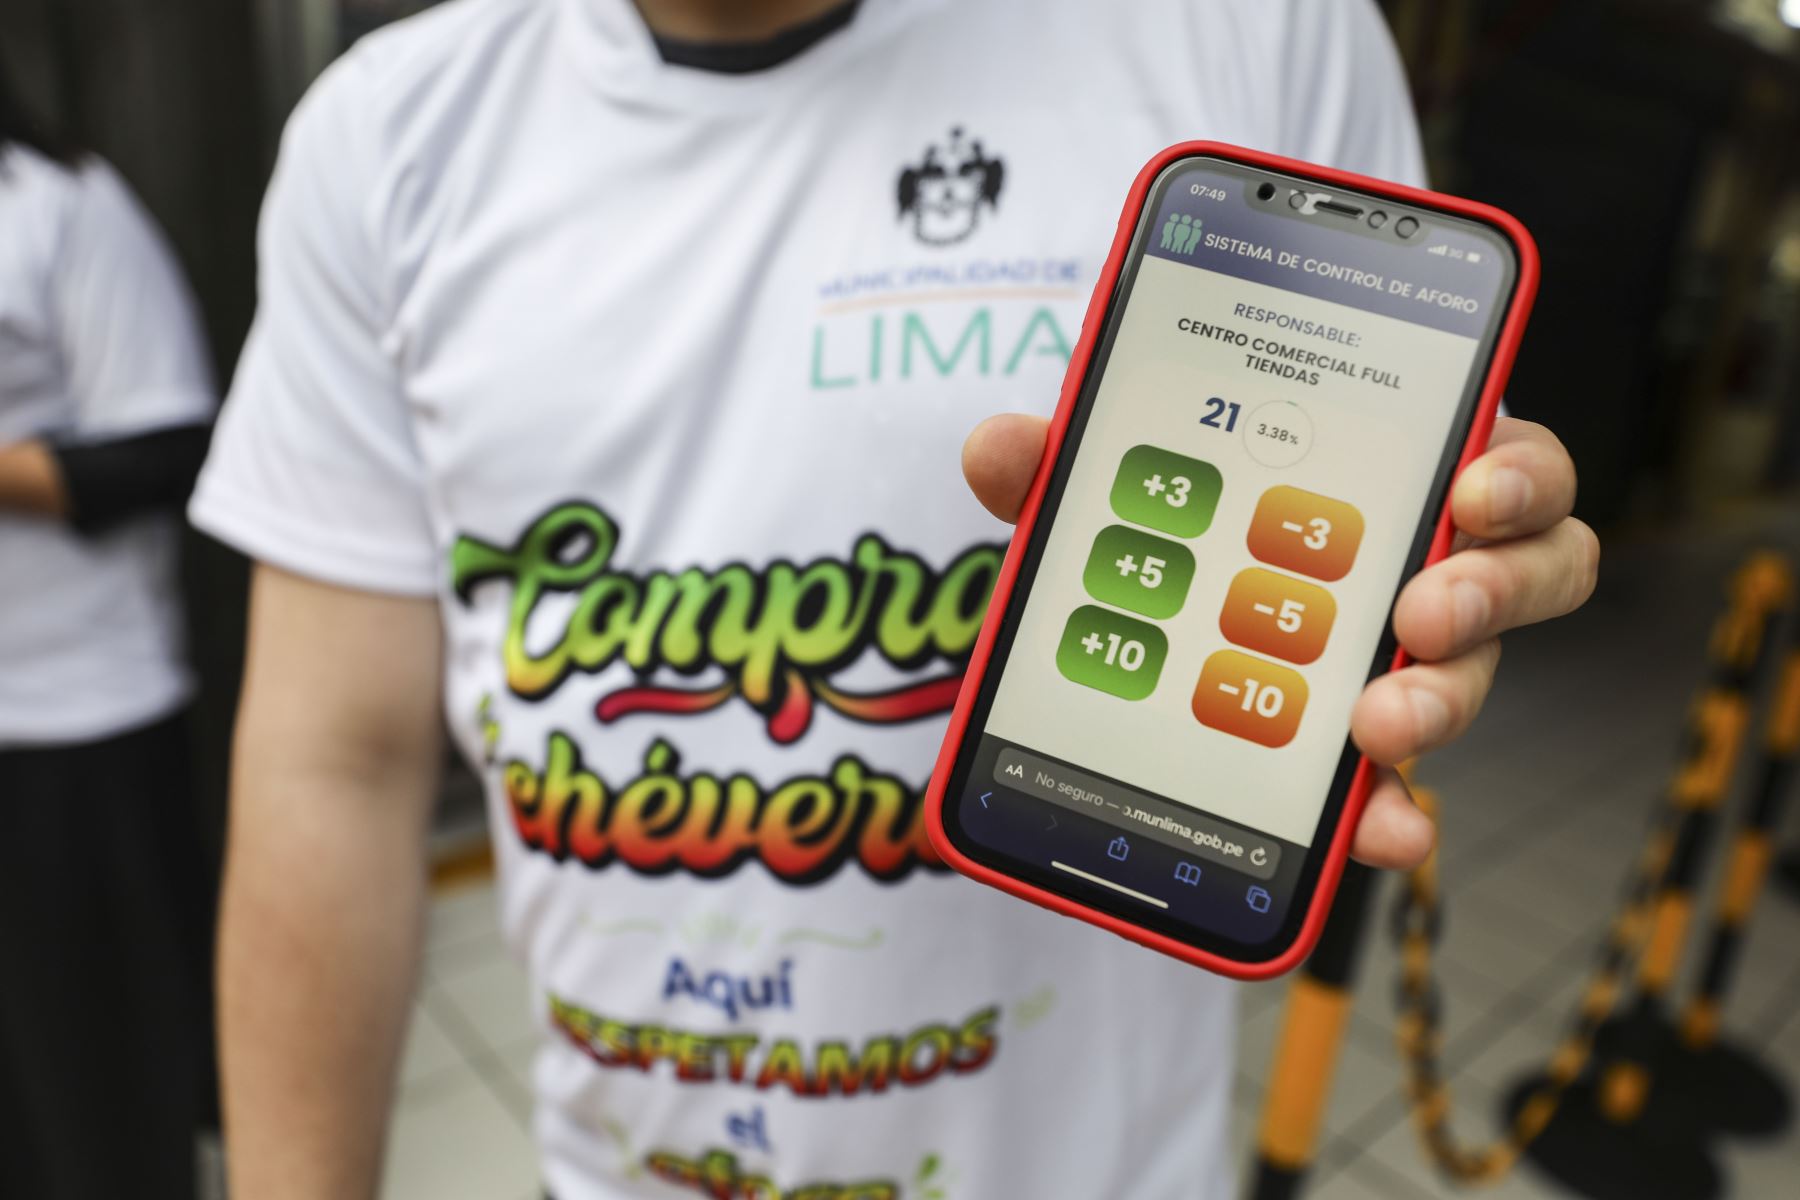 La Municipalidad de Lima presenta la app móvil Compra Chévere, que permitirá a las galerías de Mesa Redonda controlar el aforo de manera sencilla y en tiempo real, a fin de garantizar espacios seguros y libres de aglomeraciones. Foto: ANDINA/Municipalidad de Lima